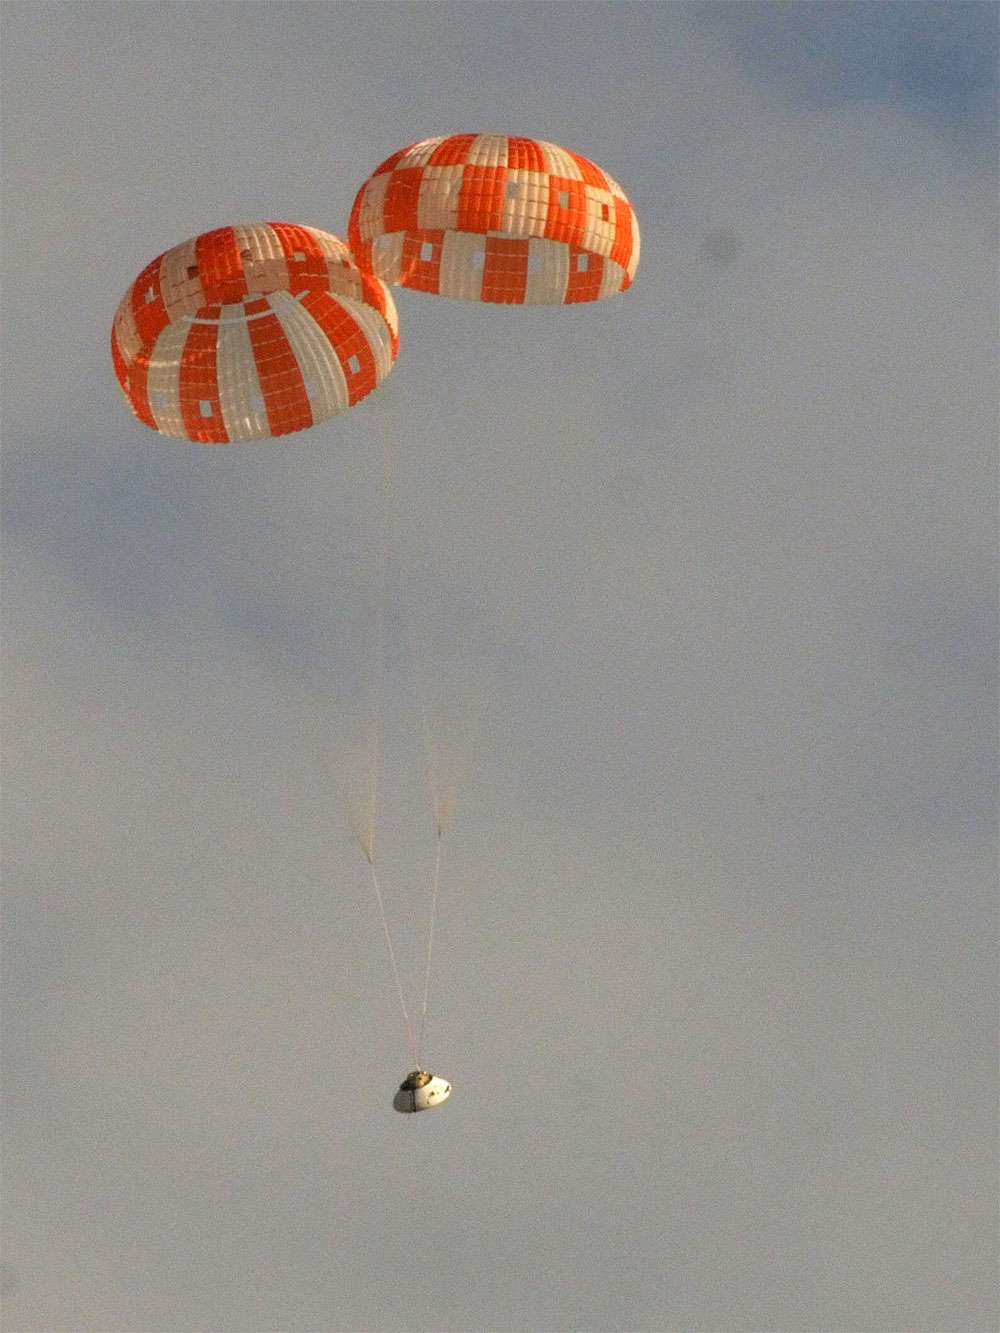 Avec deux parachutes principaux déployés au lieu de trois, la capsule Orion a tout de même réalisé une très bonne descente dans l'atmosphère. Elle s'est posée sans dommage apparent. © Nasa